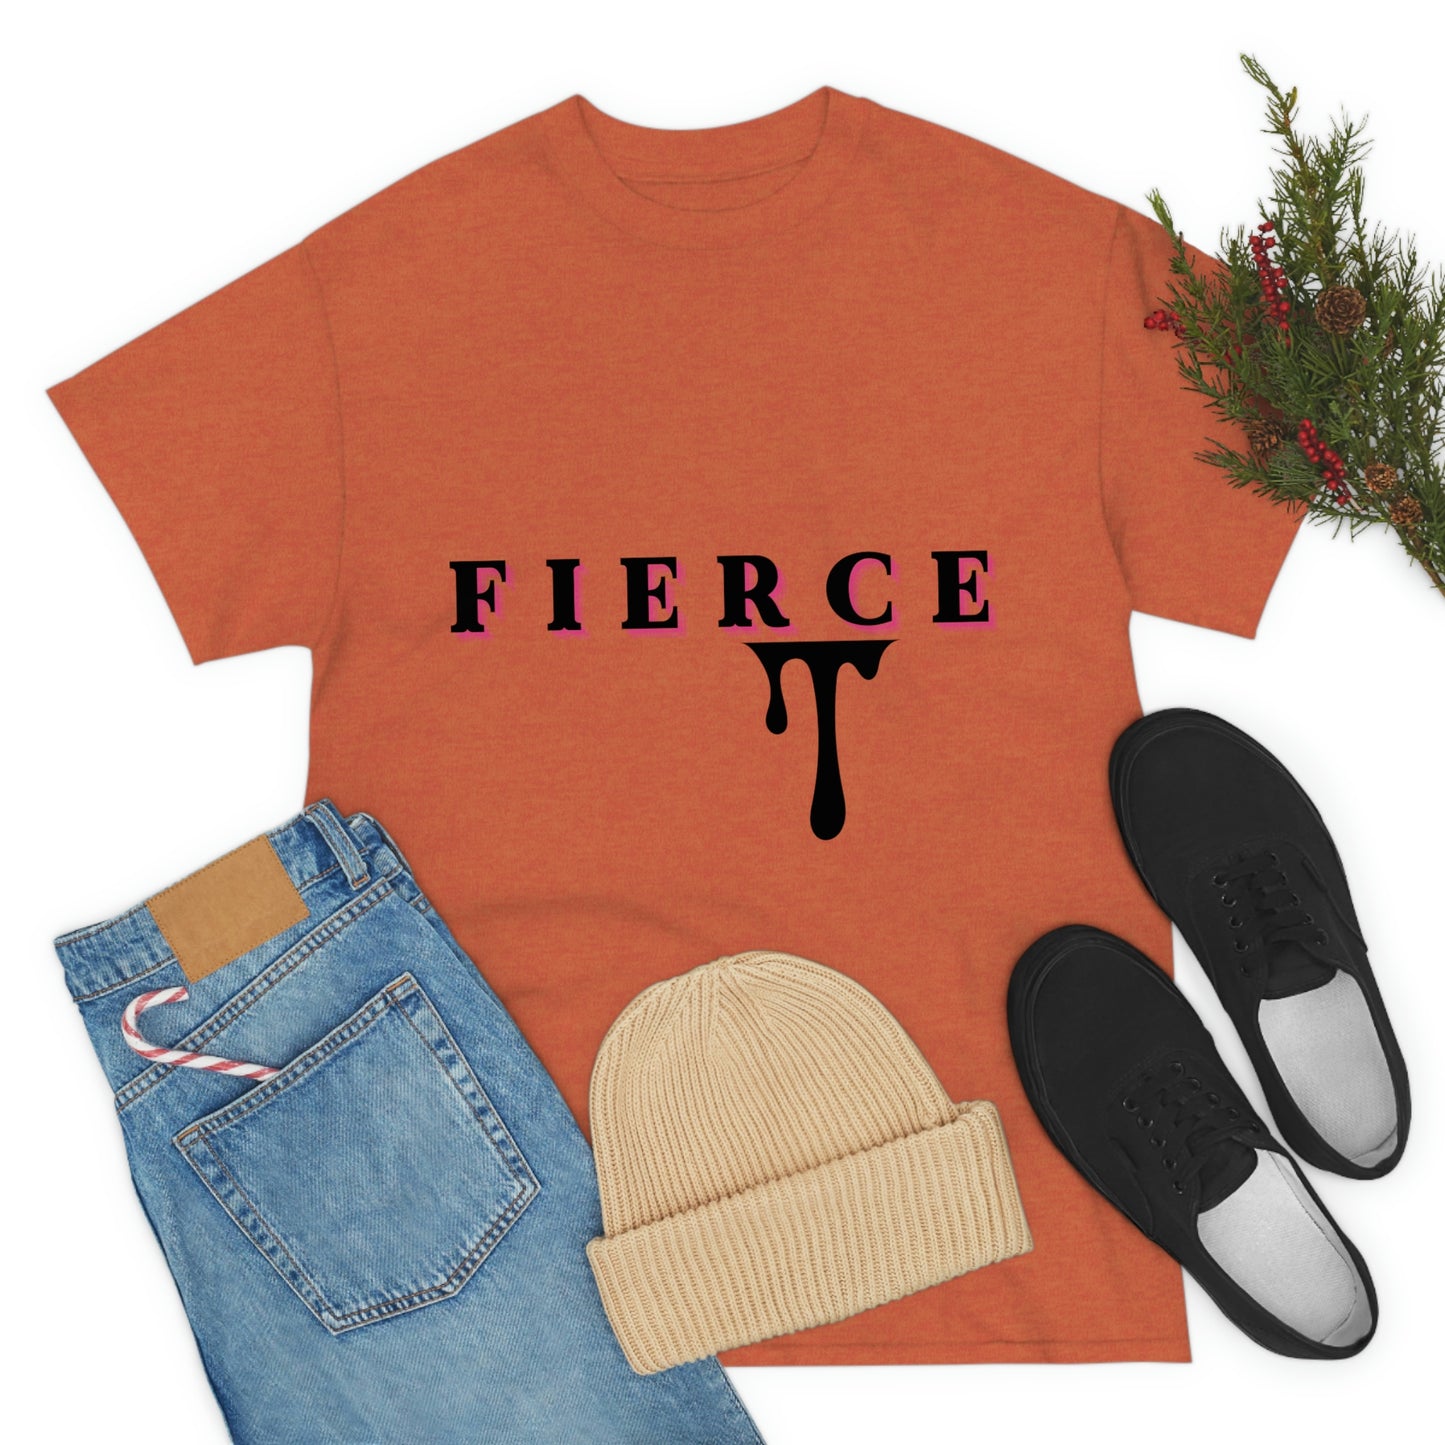 Fierce T-shirt